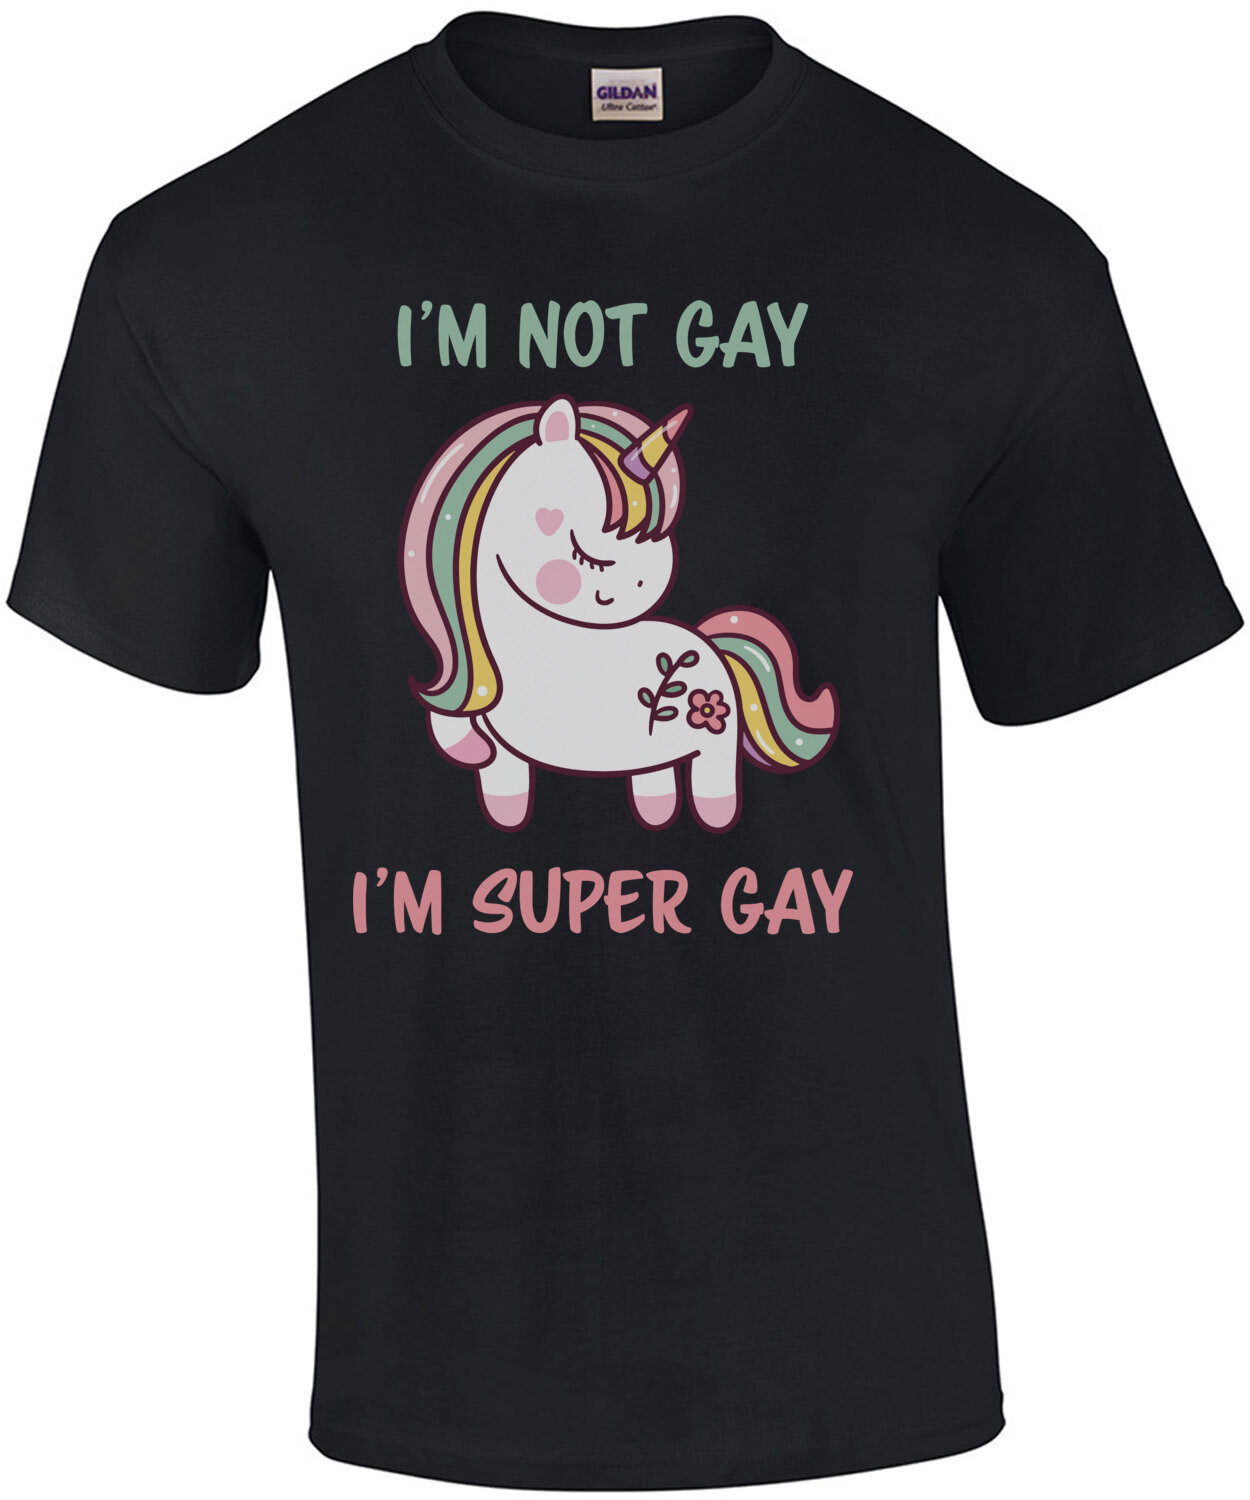 I'm not gay. I'm super gay. Funny Gay Pride LGTBQ+ T-Shirt